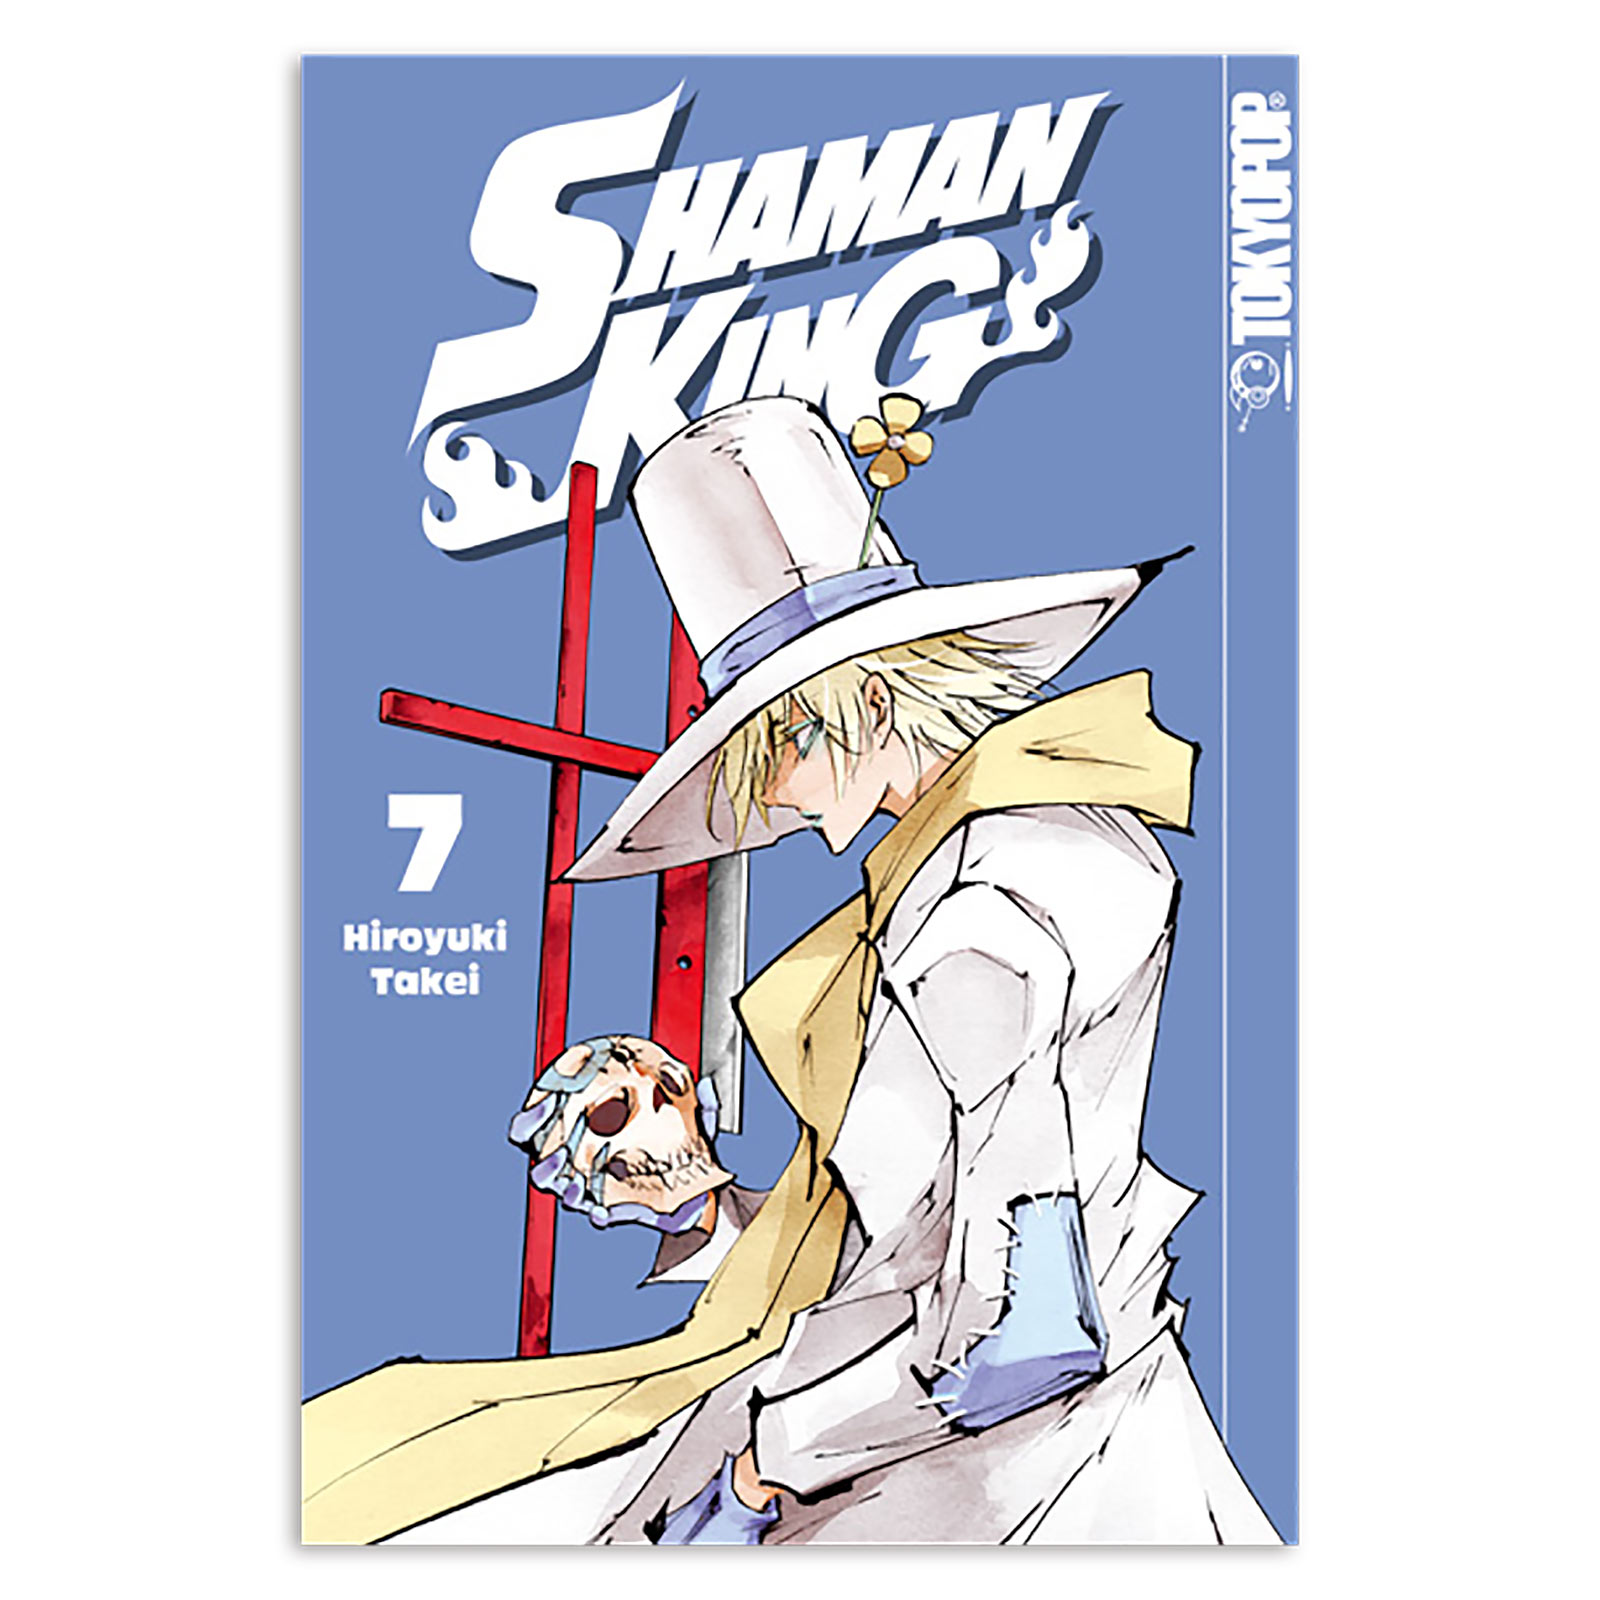 Shaman King - Volume 7 Paperback